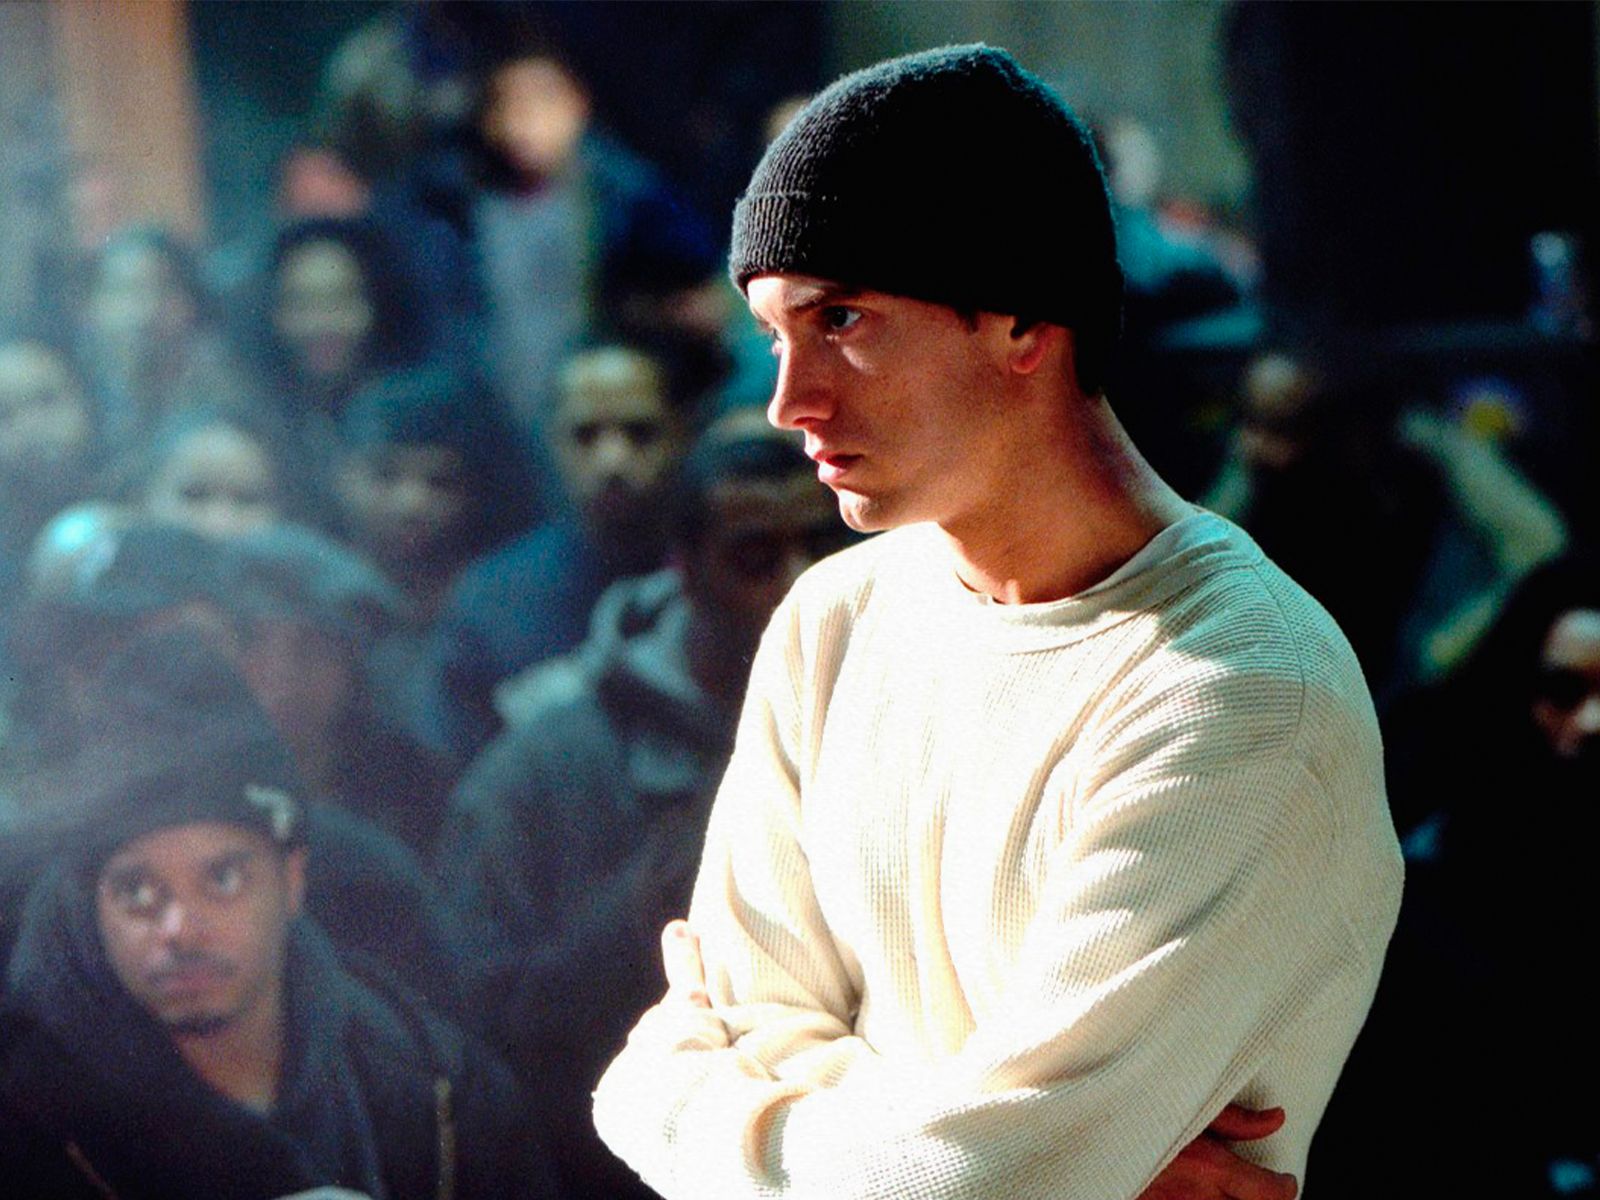 Eminem celebrates 20th anniversary of ‘8 Mile’ with exclusive album